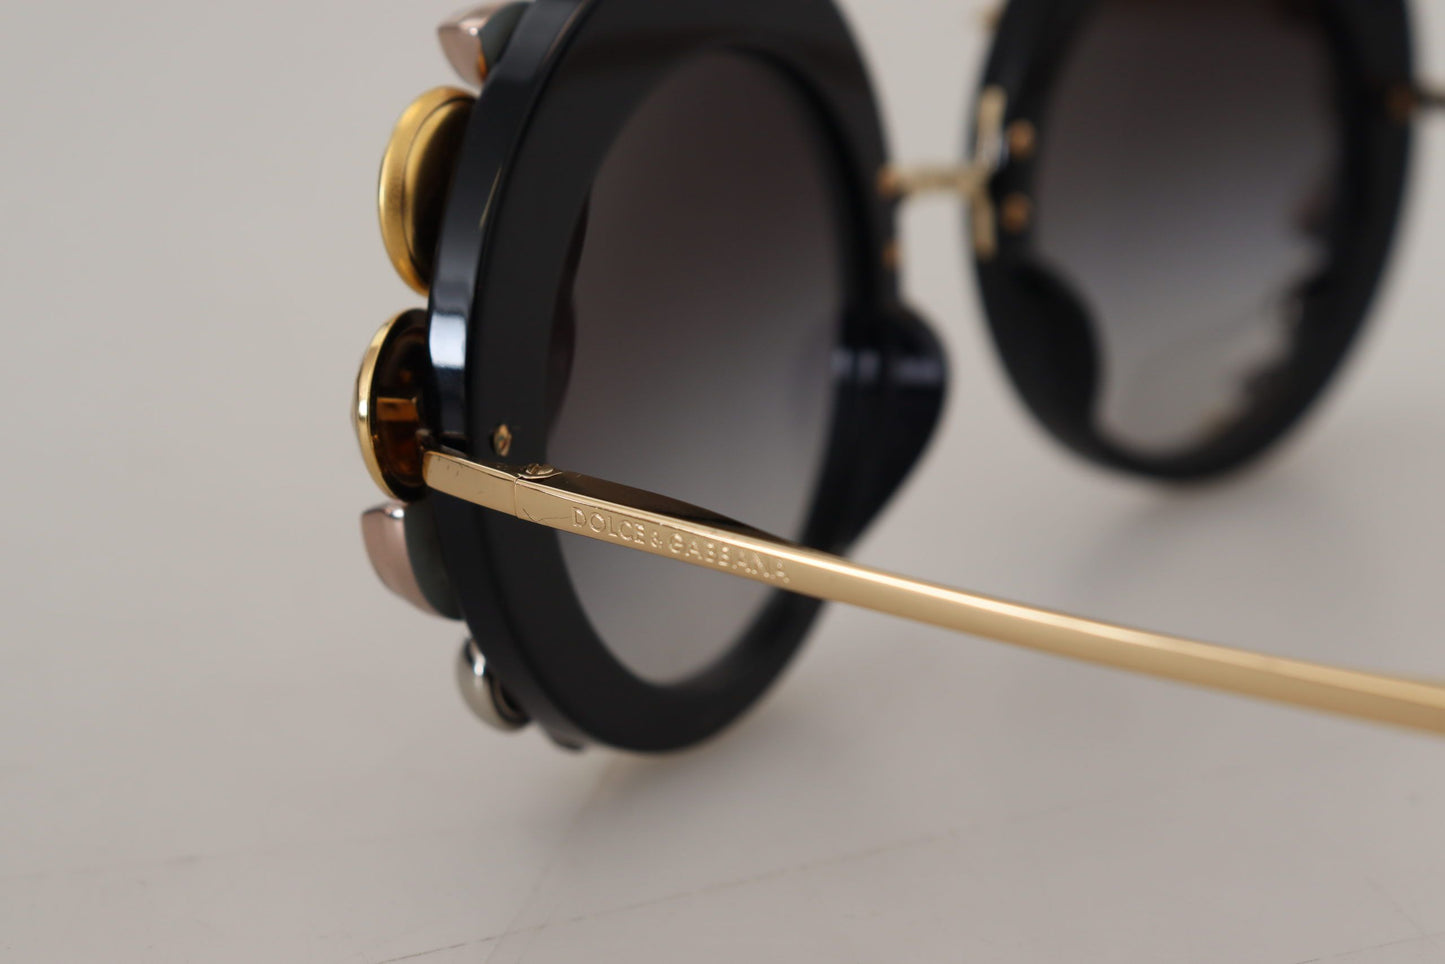 Elegant Round Embellished Sunglasses